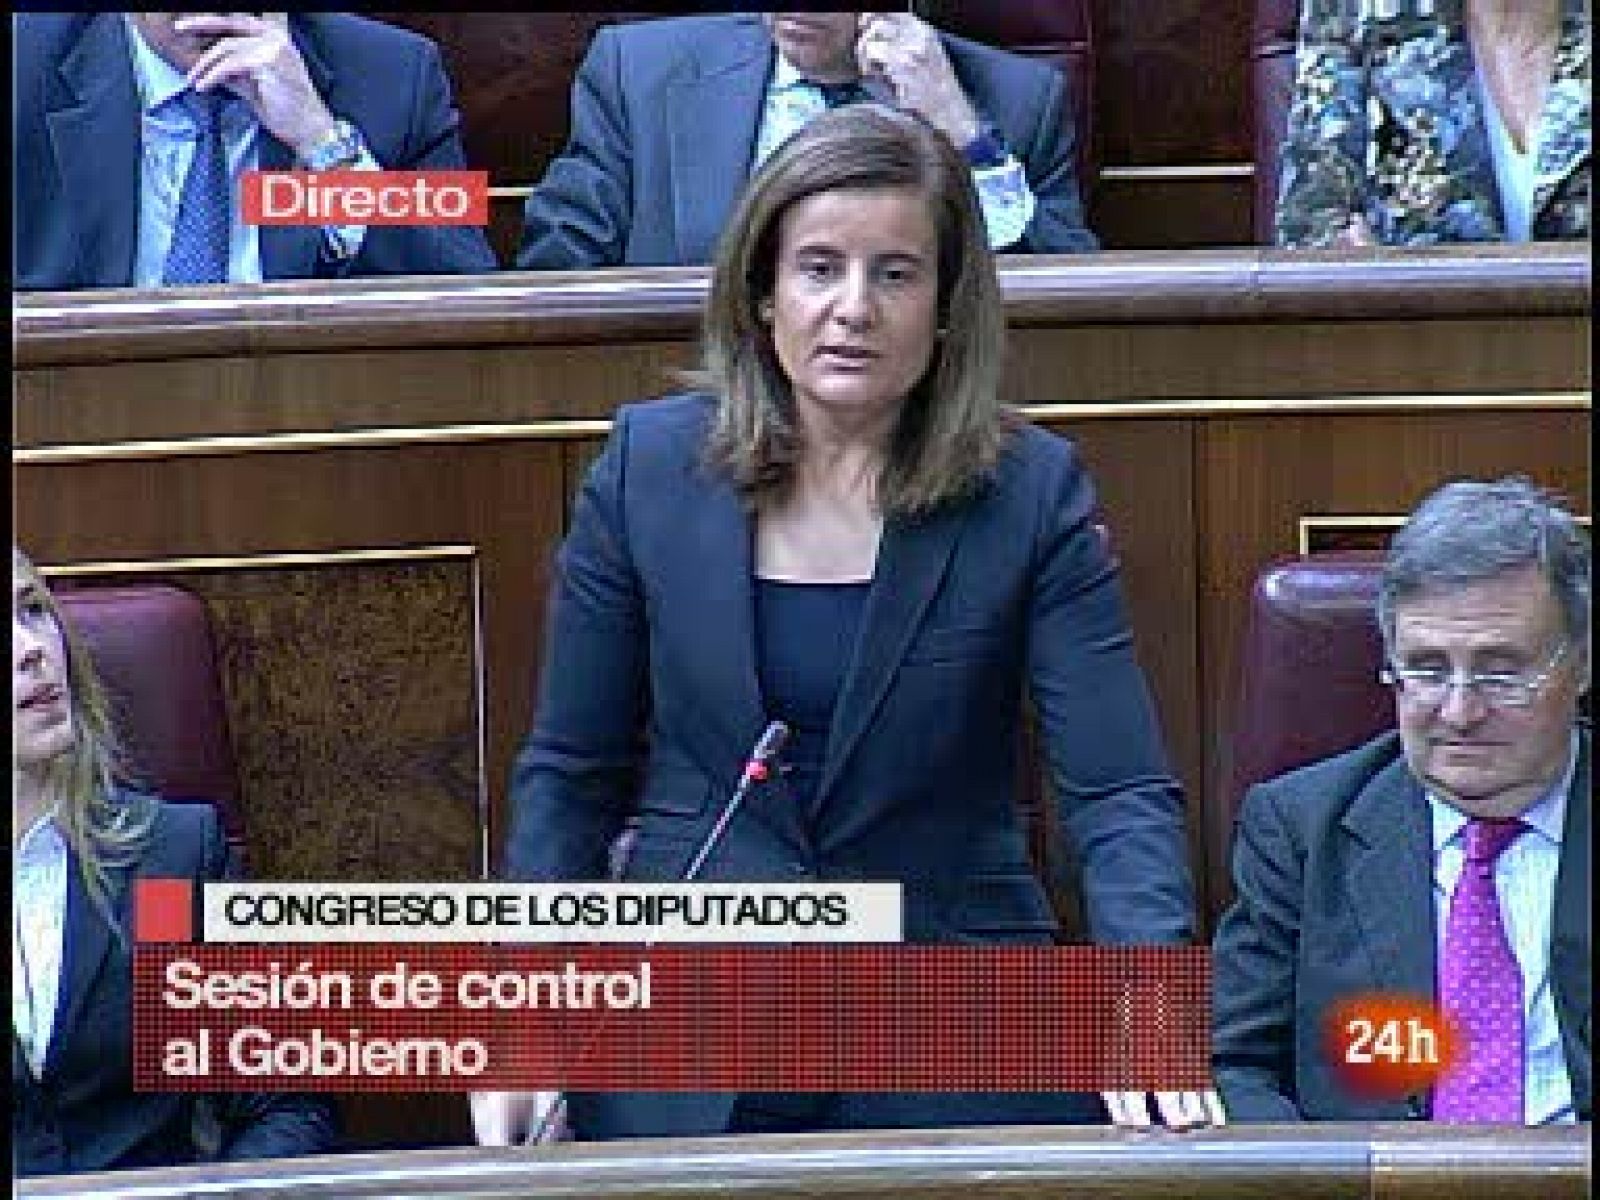  Isabel Báñez, diputada del PP, ha acusado en el Congreso a Manuel Chaves de apoderarse ilícitamente de 700 millones de euros junto a sus compañeros socialistas mientras era presidente de la junta de Andalucía